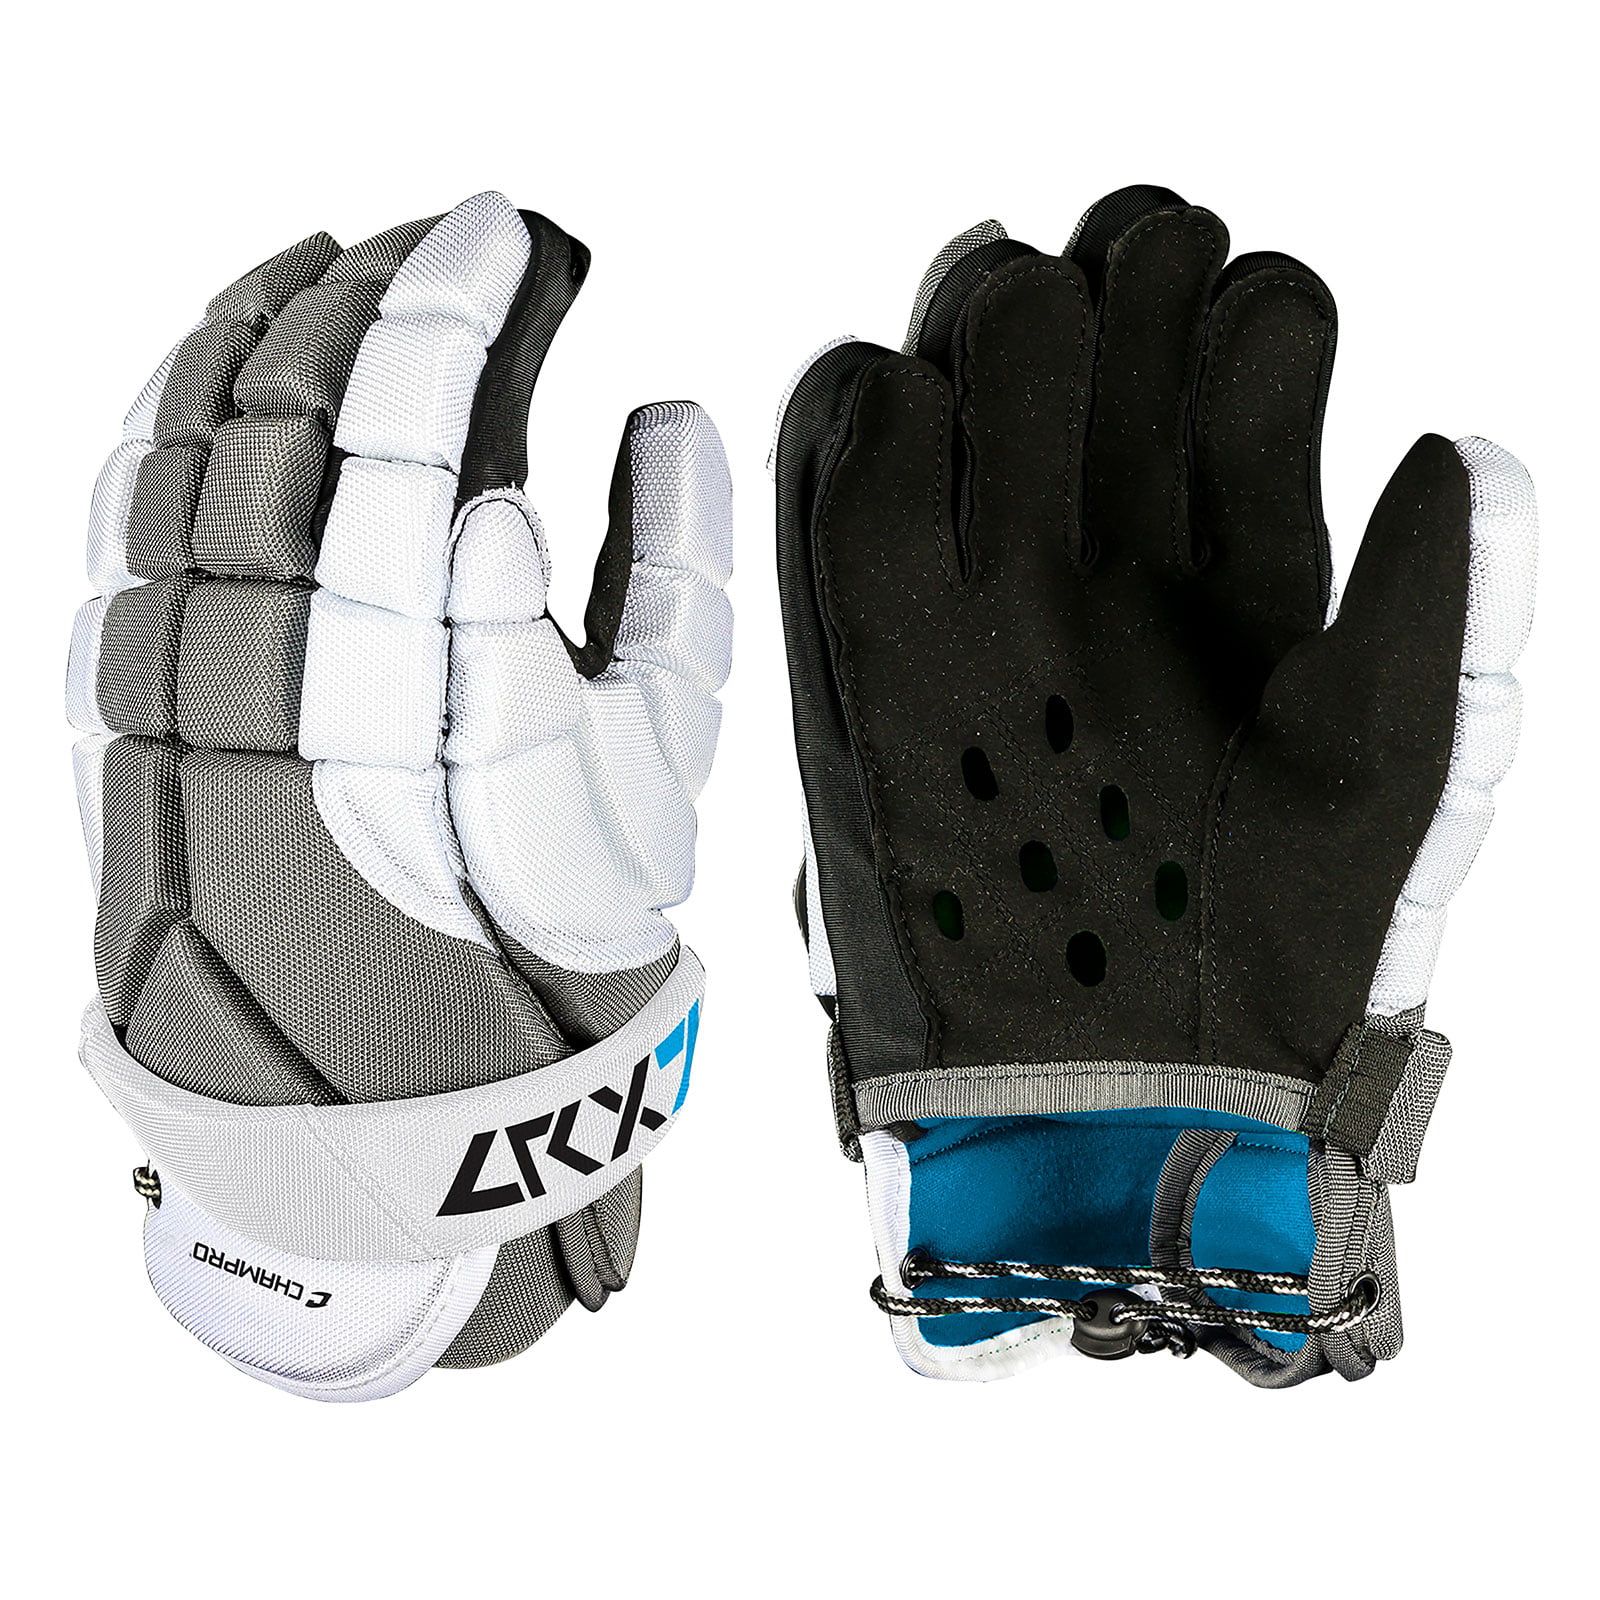 Adjustable Straps Grey Champro Lacrosse LRX7 Junior Arm / Elbow Pads XXS-L 